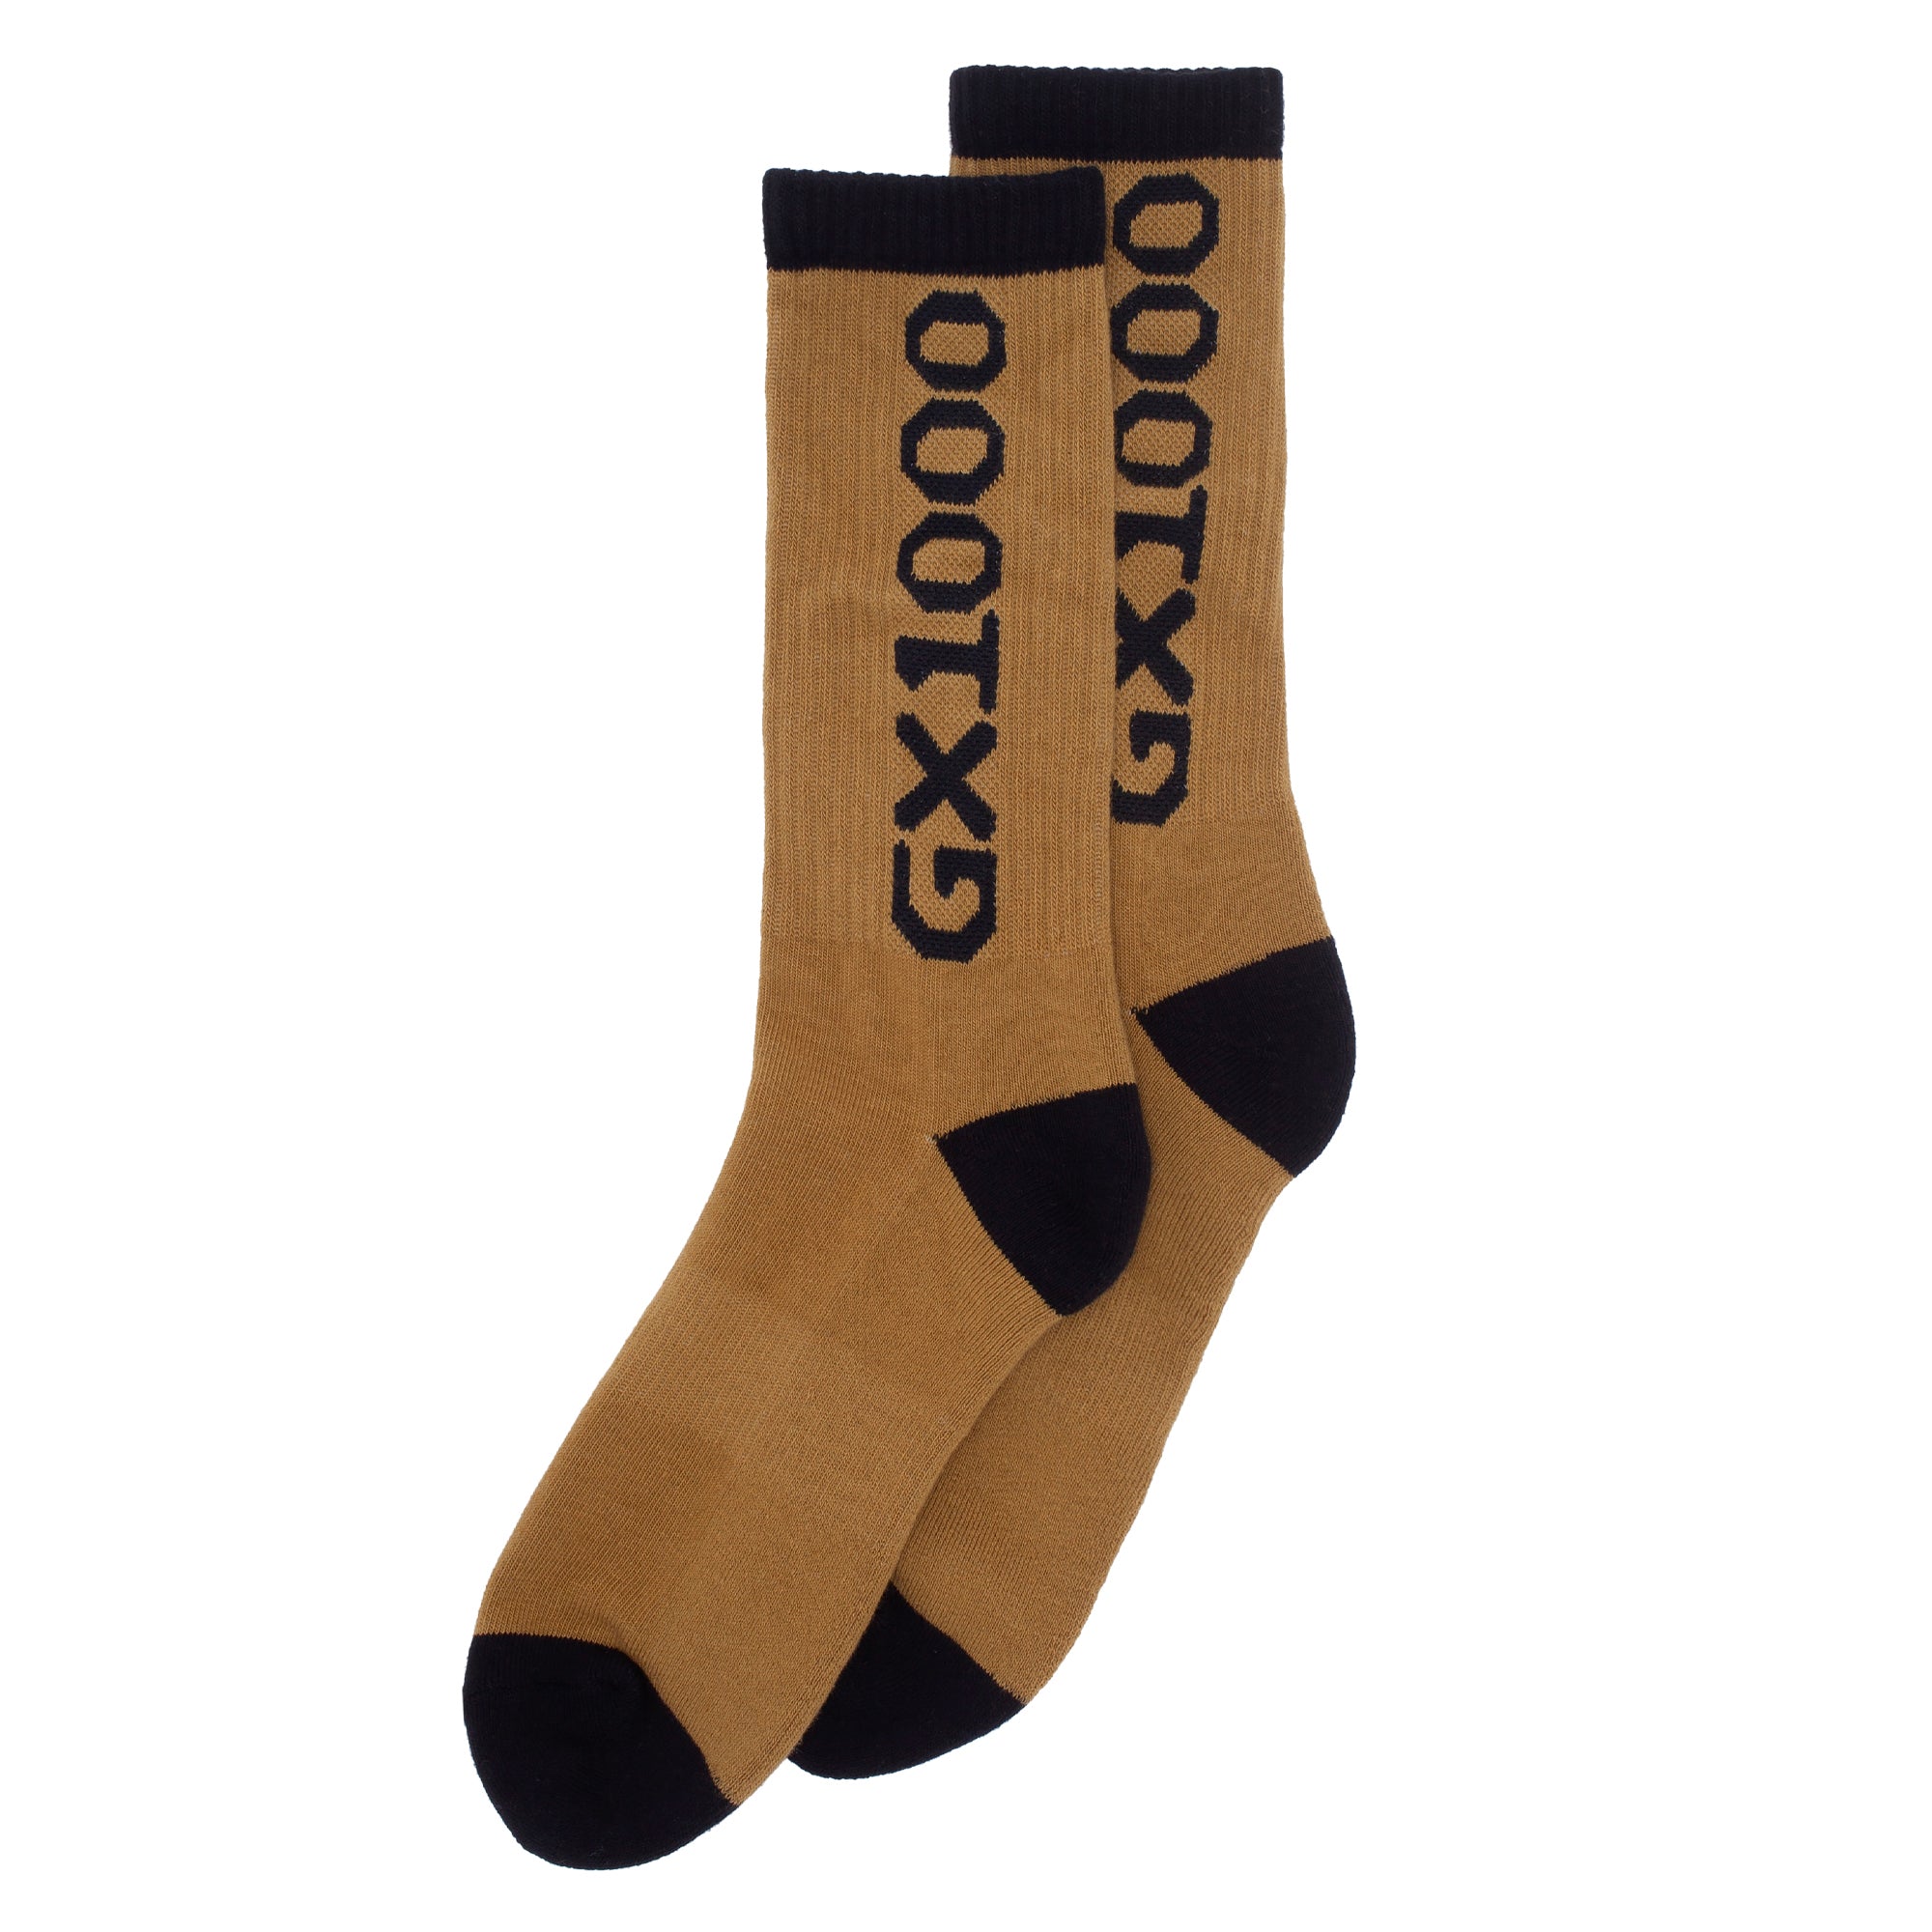 GX1000 - OG Logo Socks "Ceder"